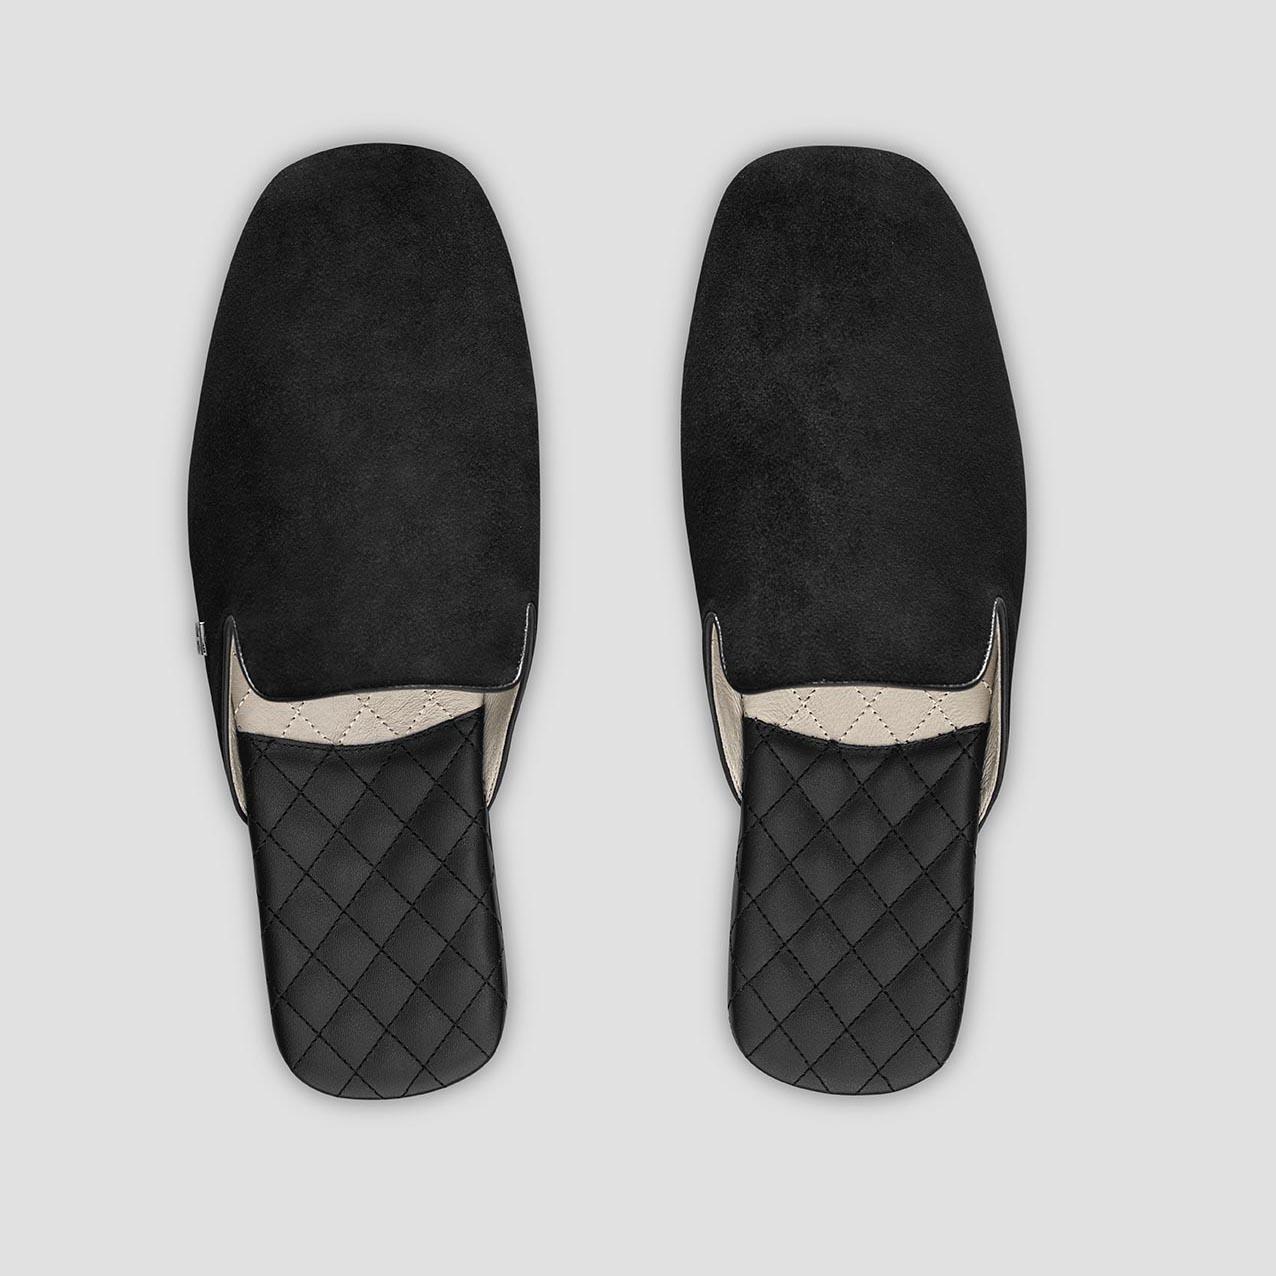 Тапочки Togas Реон черные мужские кожаные, размер 40-41 держатель для шланга размер s на липучке чёрный